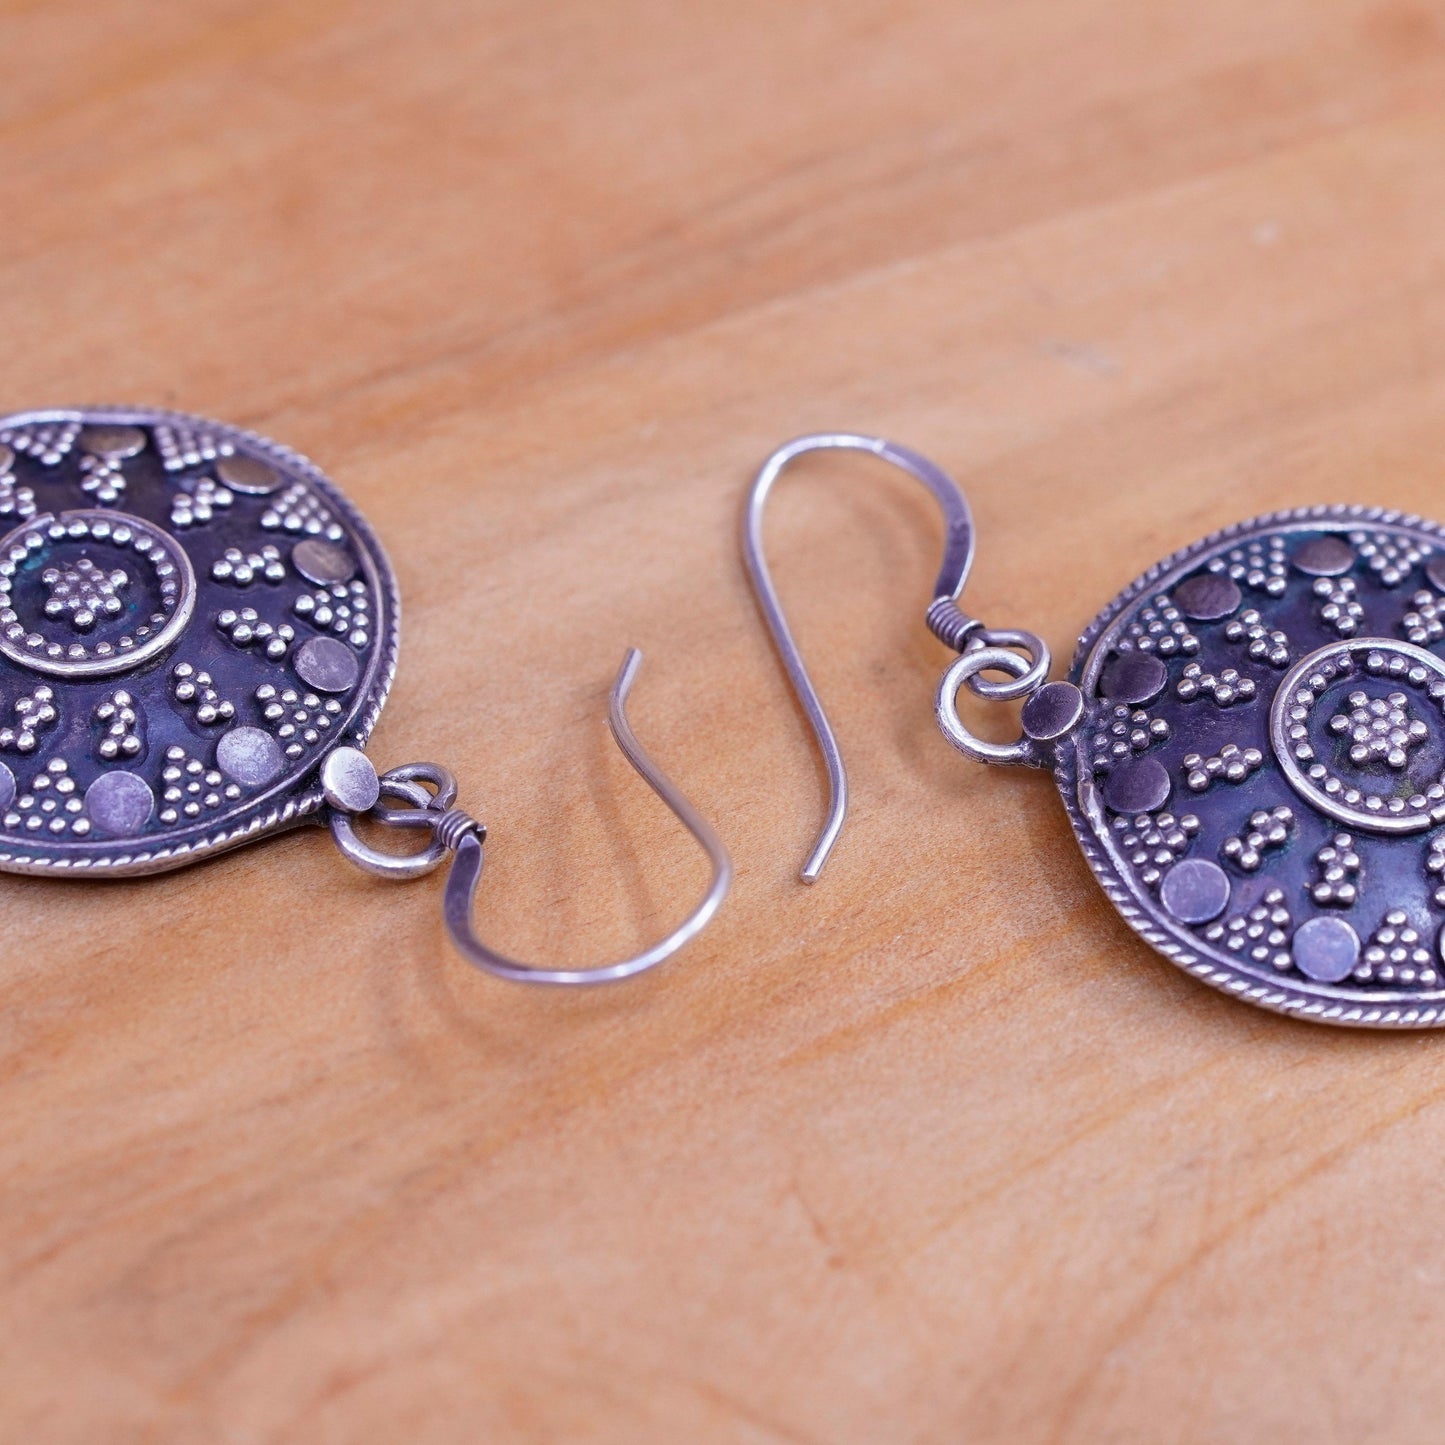 Vintage Sterling silver handmade earrings, 925 beaded disc drops